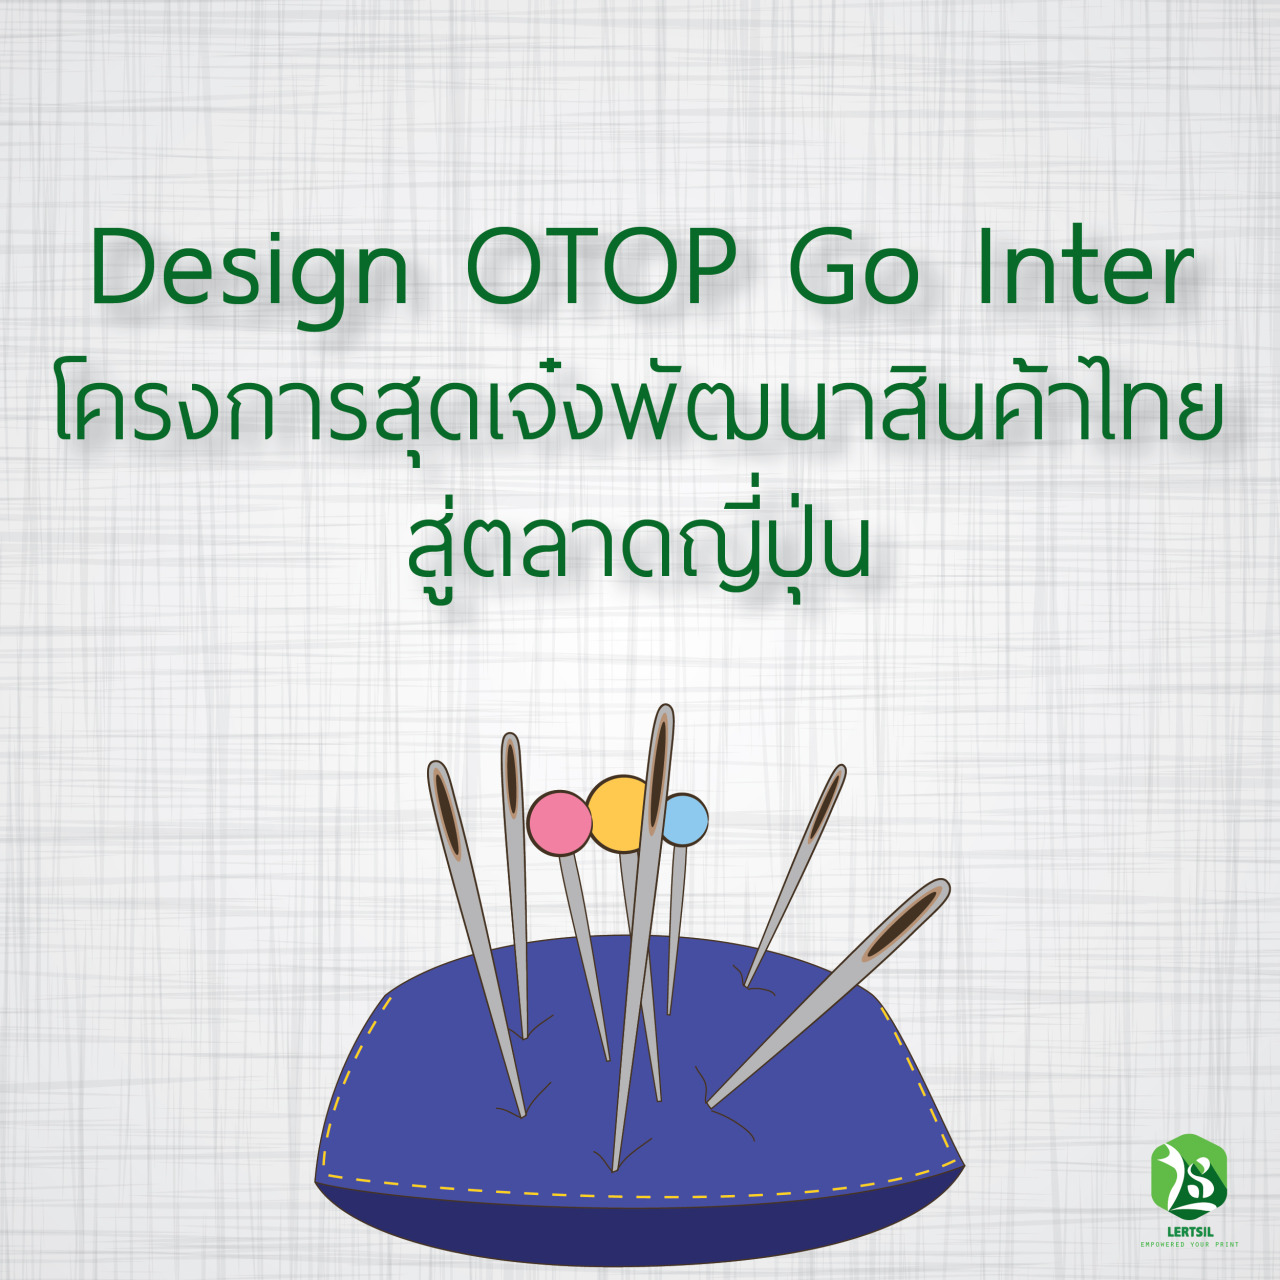 Design OTOP GO Inter โครงการสุดเจ๋งพัฒนาสินค้าไทยสู่ตลาดญี่ปุ่น